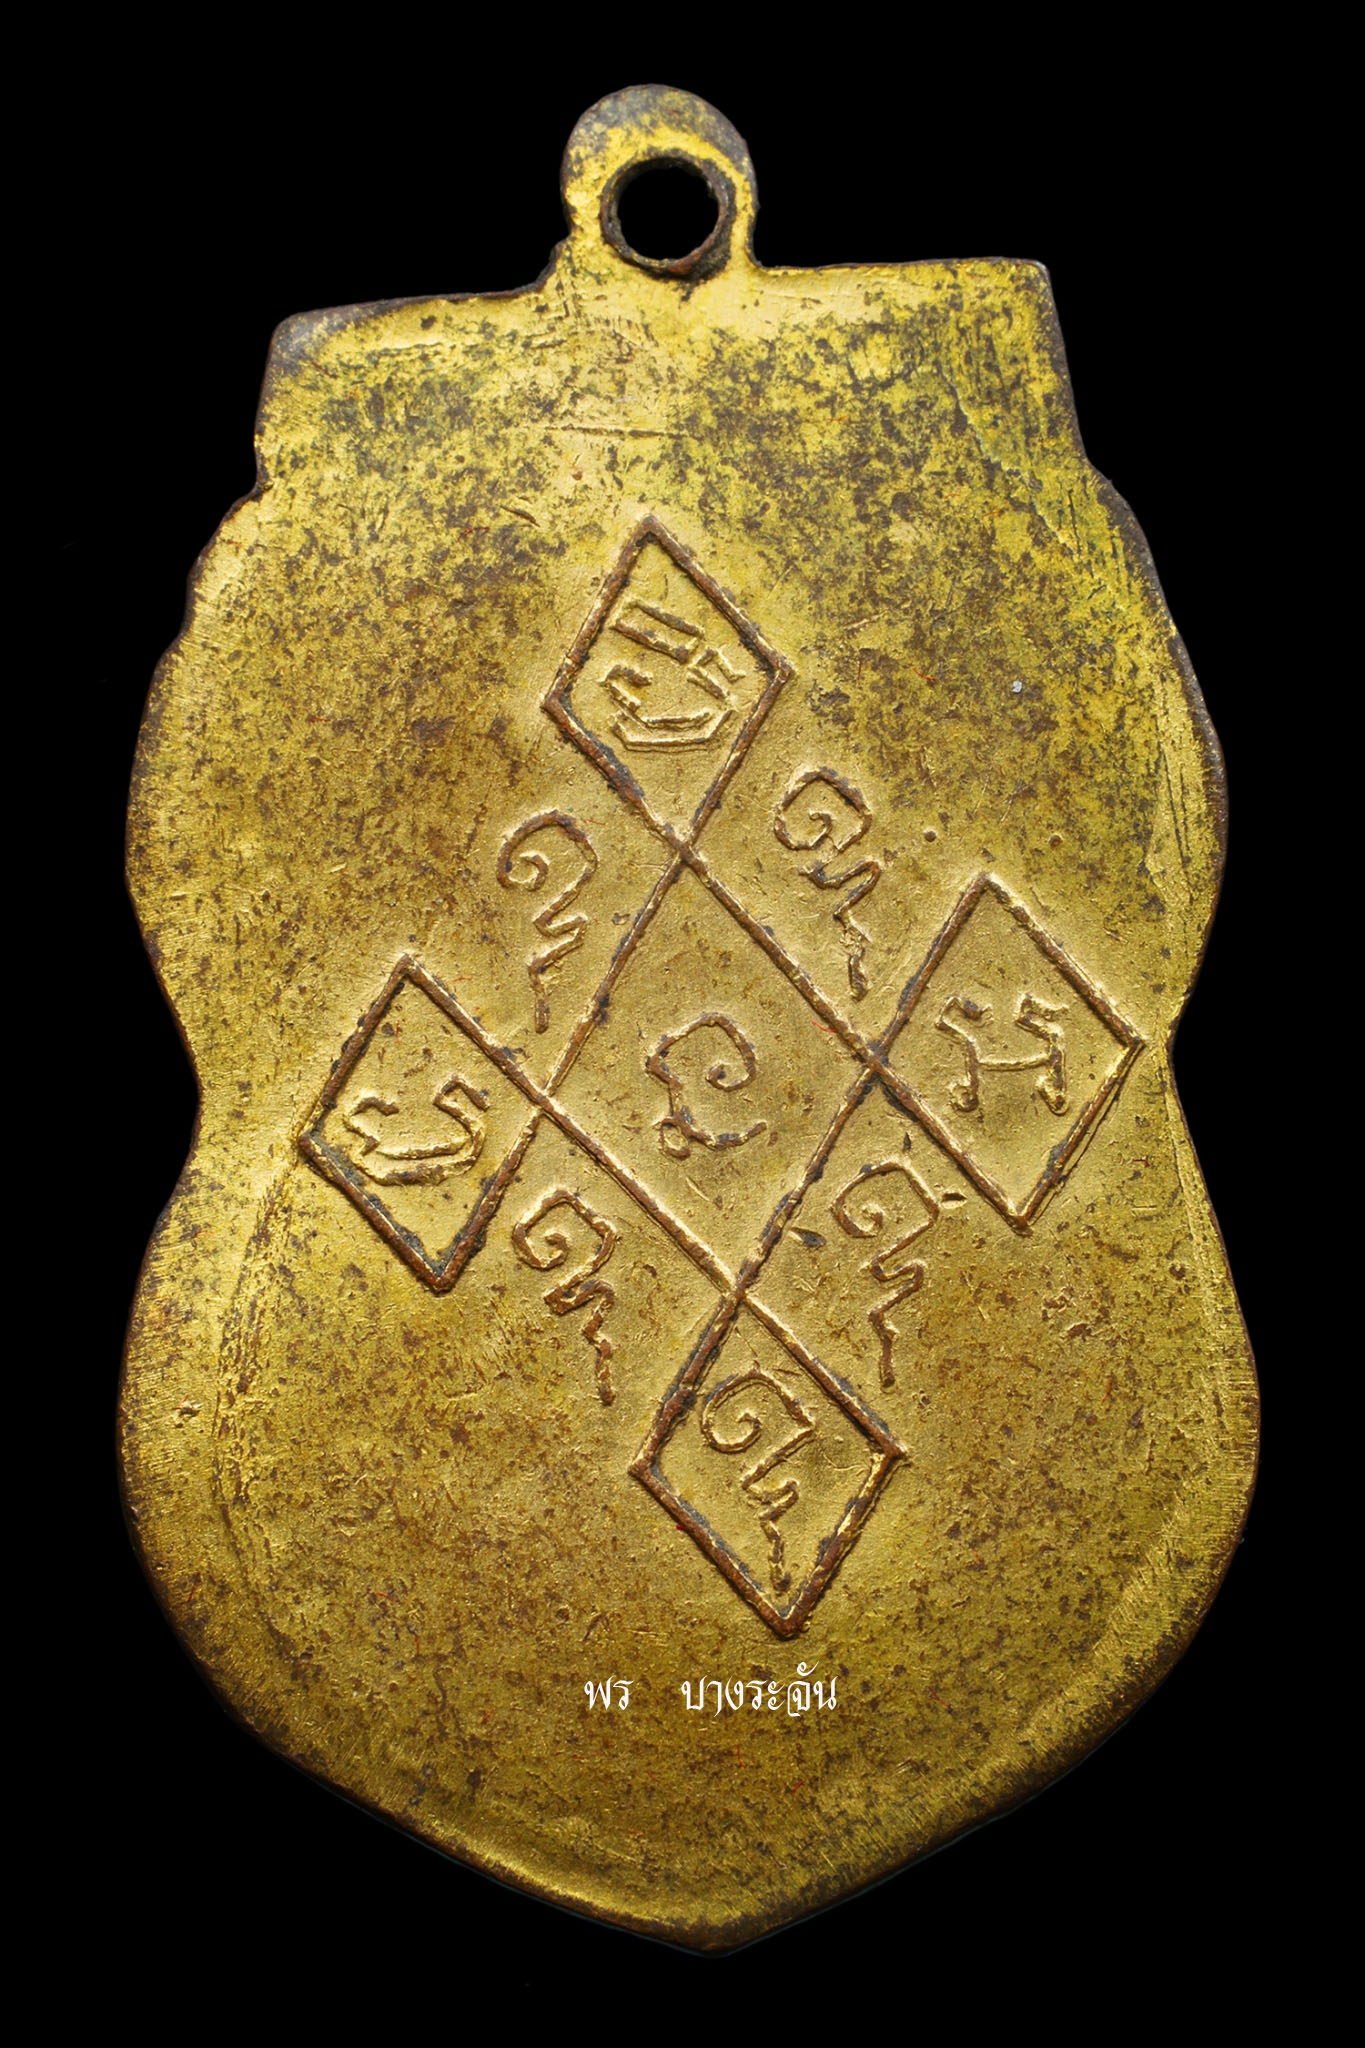 เหรียญหลวงพ่อหร่ำ วัดกร่าง จ.ปทุมธานี รุ่นแรก (บล็อกแตก) จัดสร้างขึ้นในปี พ.ศ.2469